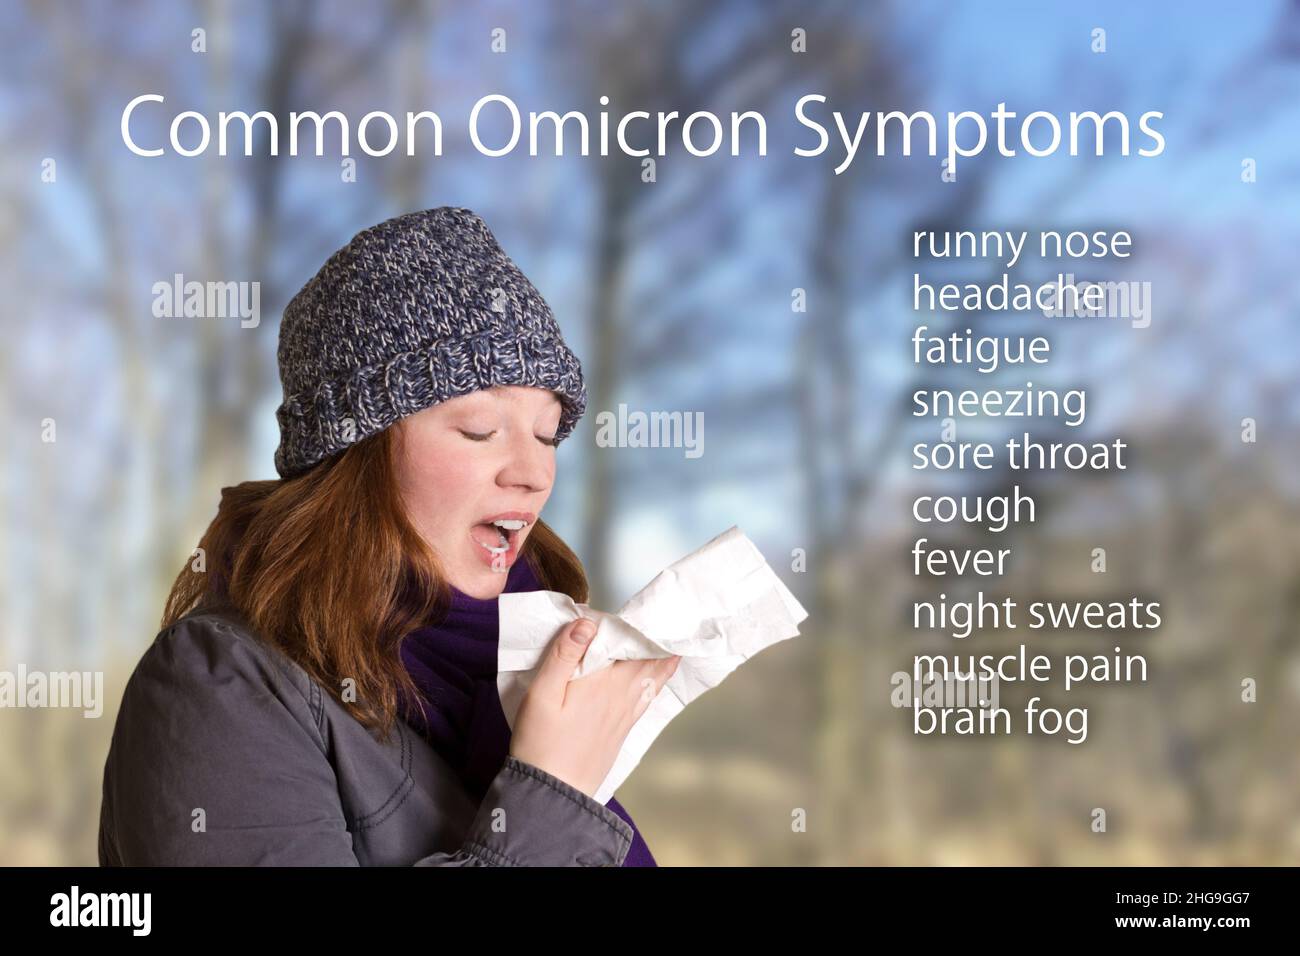 Síntomas comunes de la variante covid omicron, como secreción nasal, dolor de cabeza, fatiga y dolor de garganta, texto junto a un retrato de una mujer joven estornudando. Foto de stock